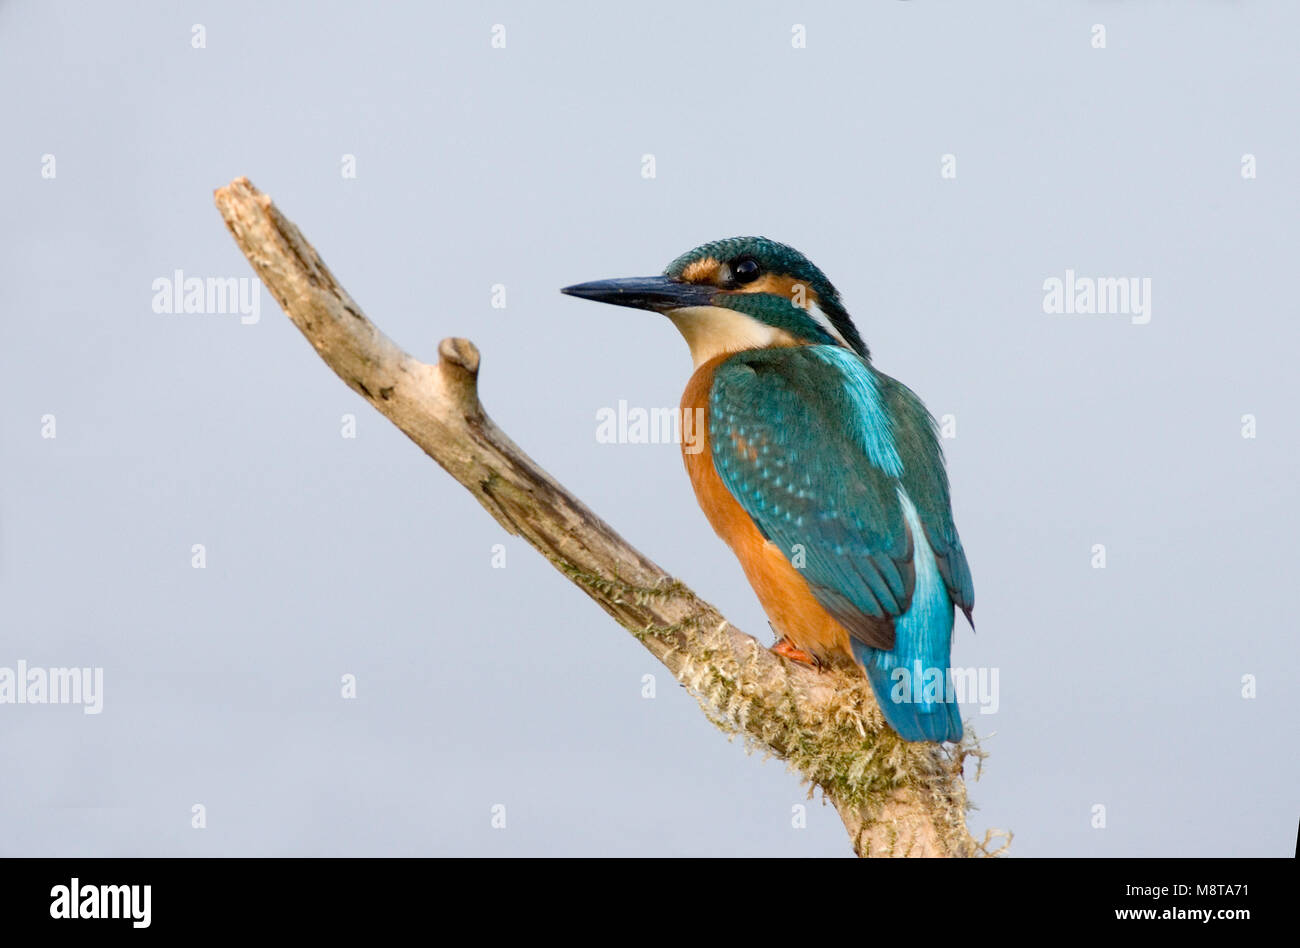 IJsvogel zittend op tak ; Kingfisher commun perché sur une branche Banque D'Images